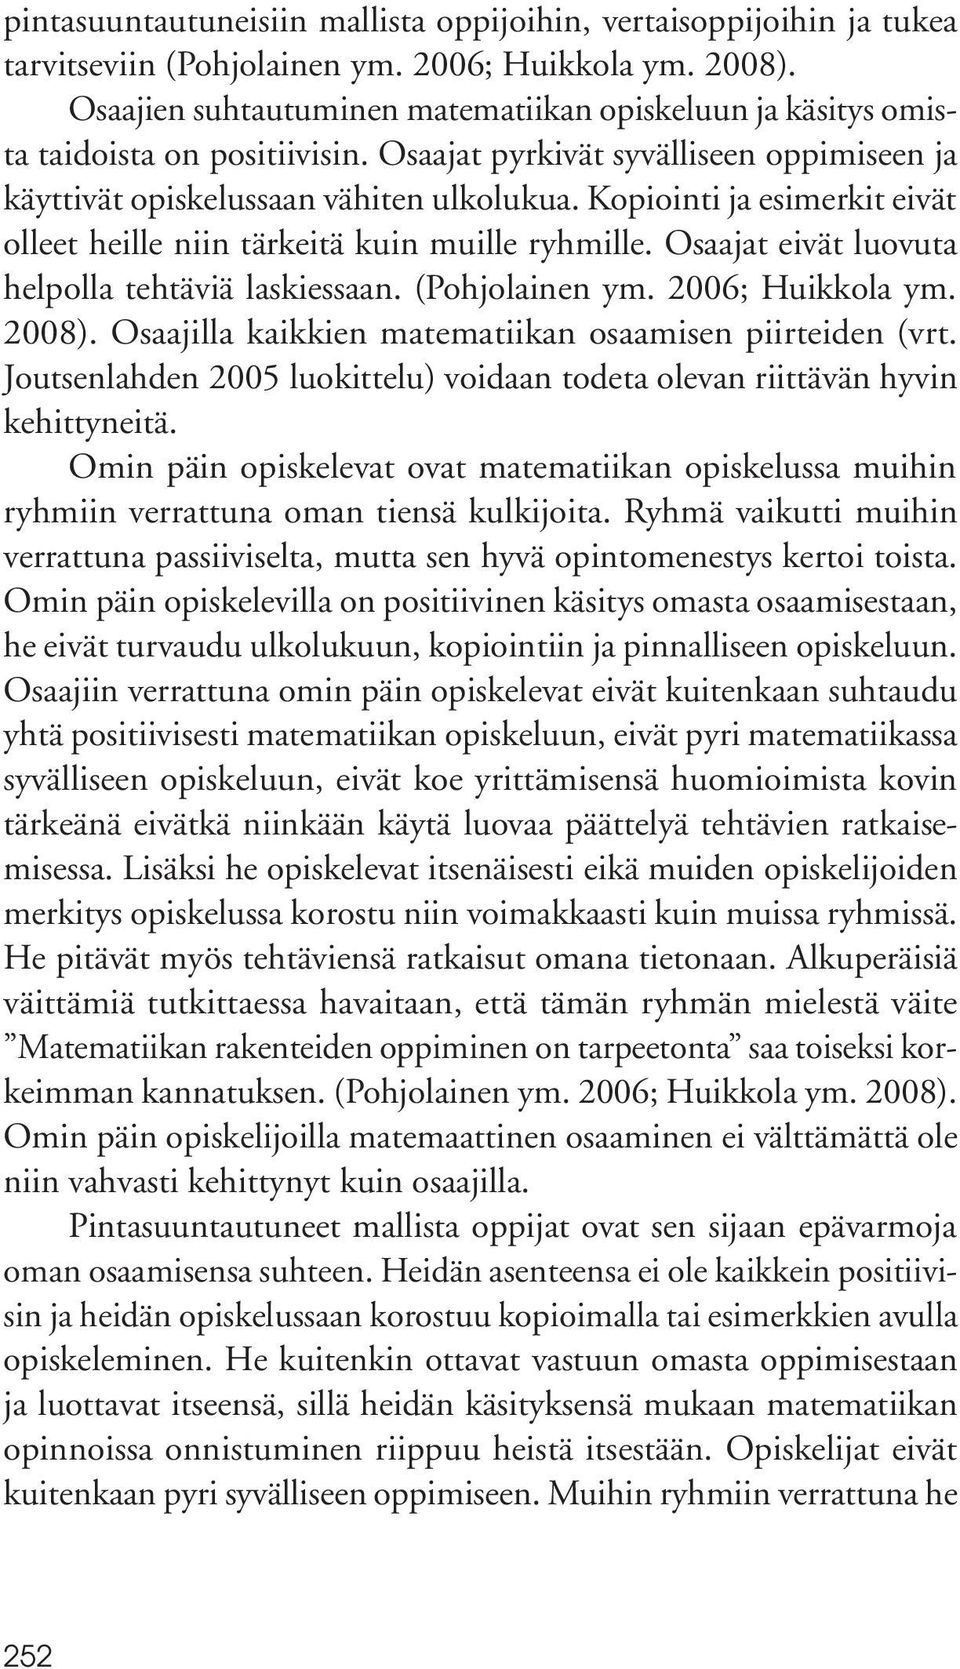 Kopiointi ja esimerkit eivät olleet heille niin tärkeitä kuin muille ryhmille. Osaajat eivät luovuta helpolla tehtäviä laskiessaan. (Pohjolainen ym. 2006; Huikkola ym. 2008).